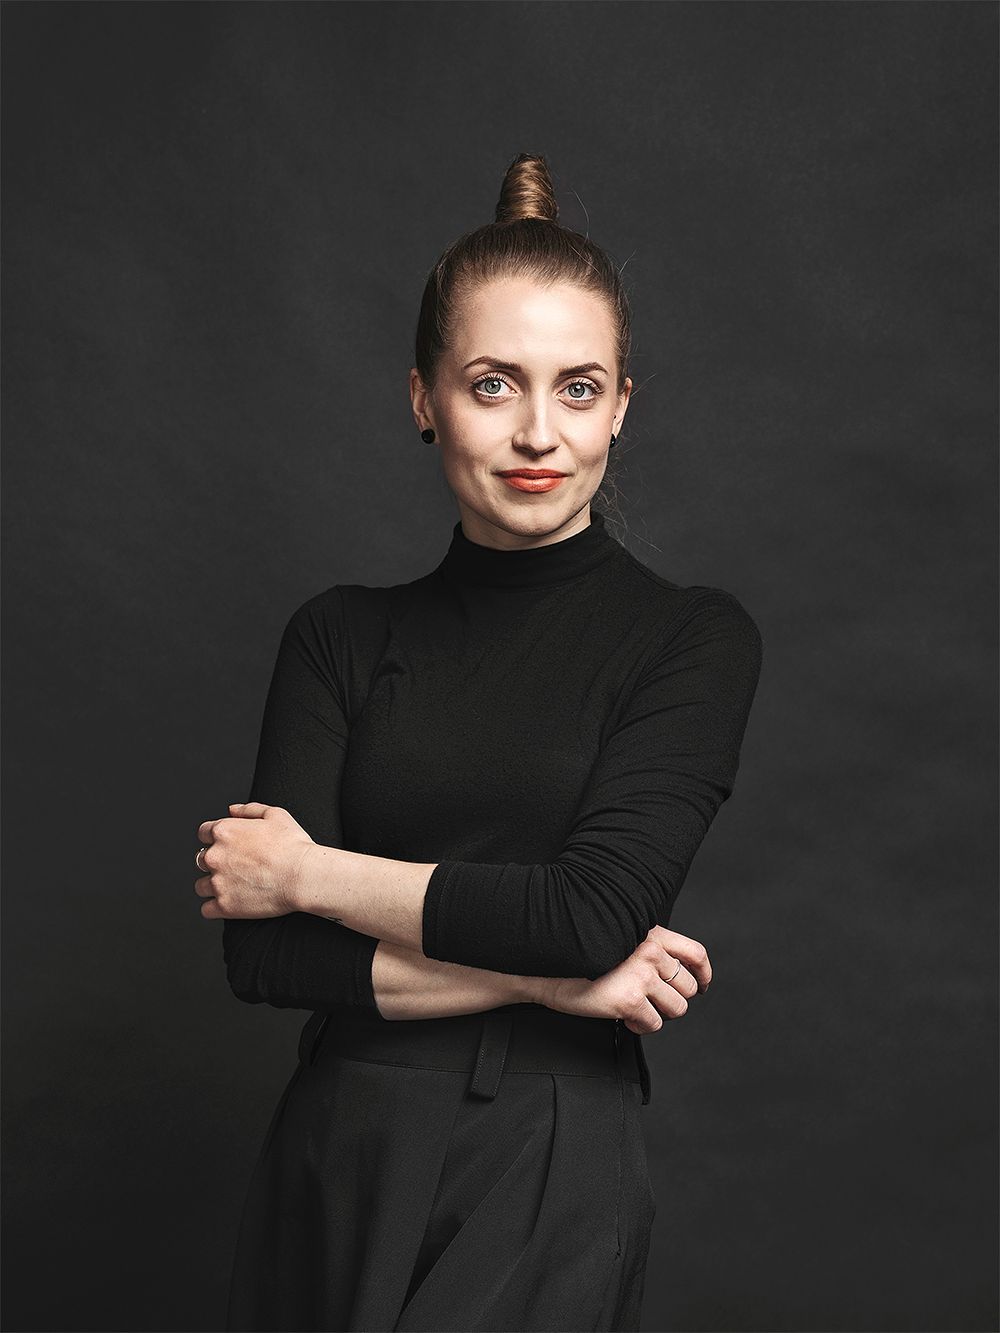 Vuoden nuori muotoilija 2019 Laura Väre